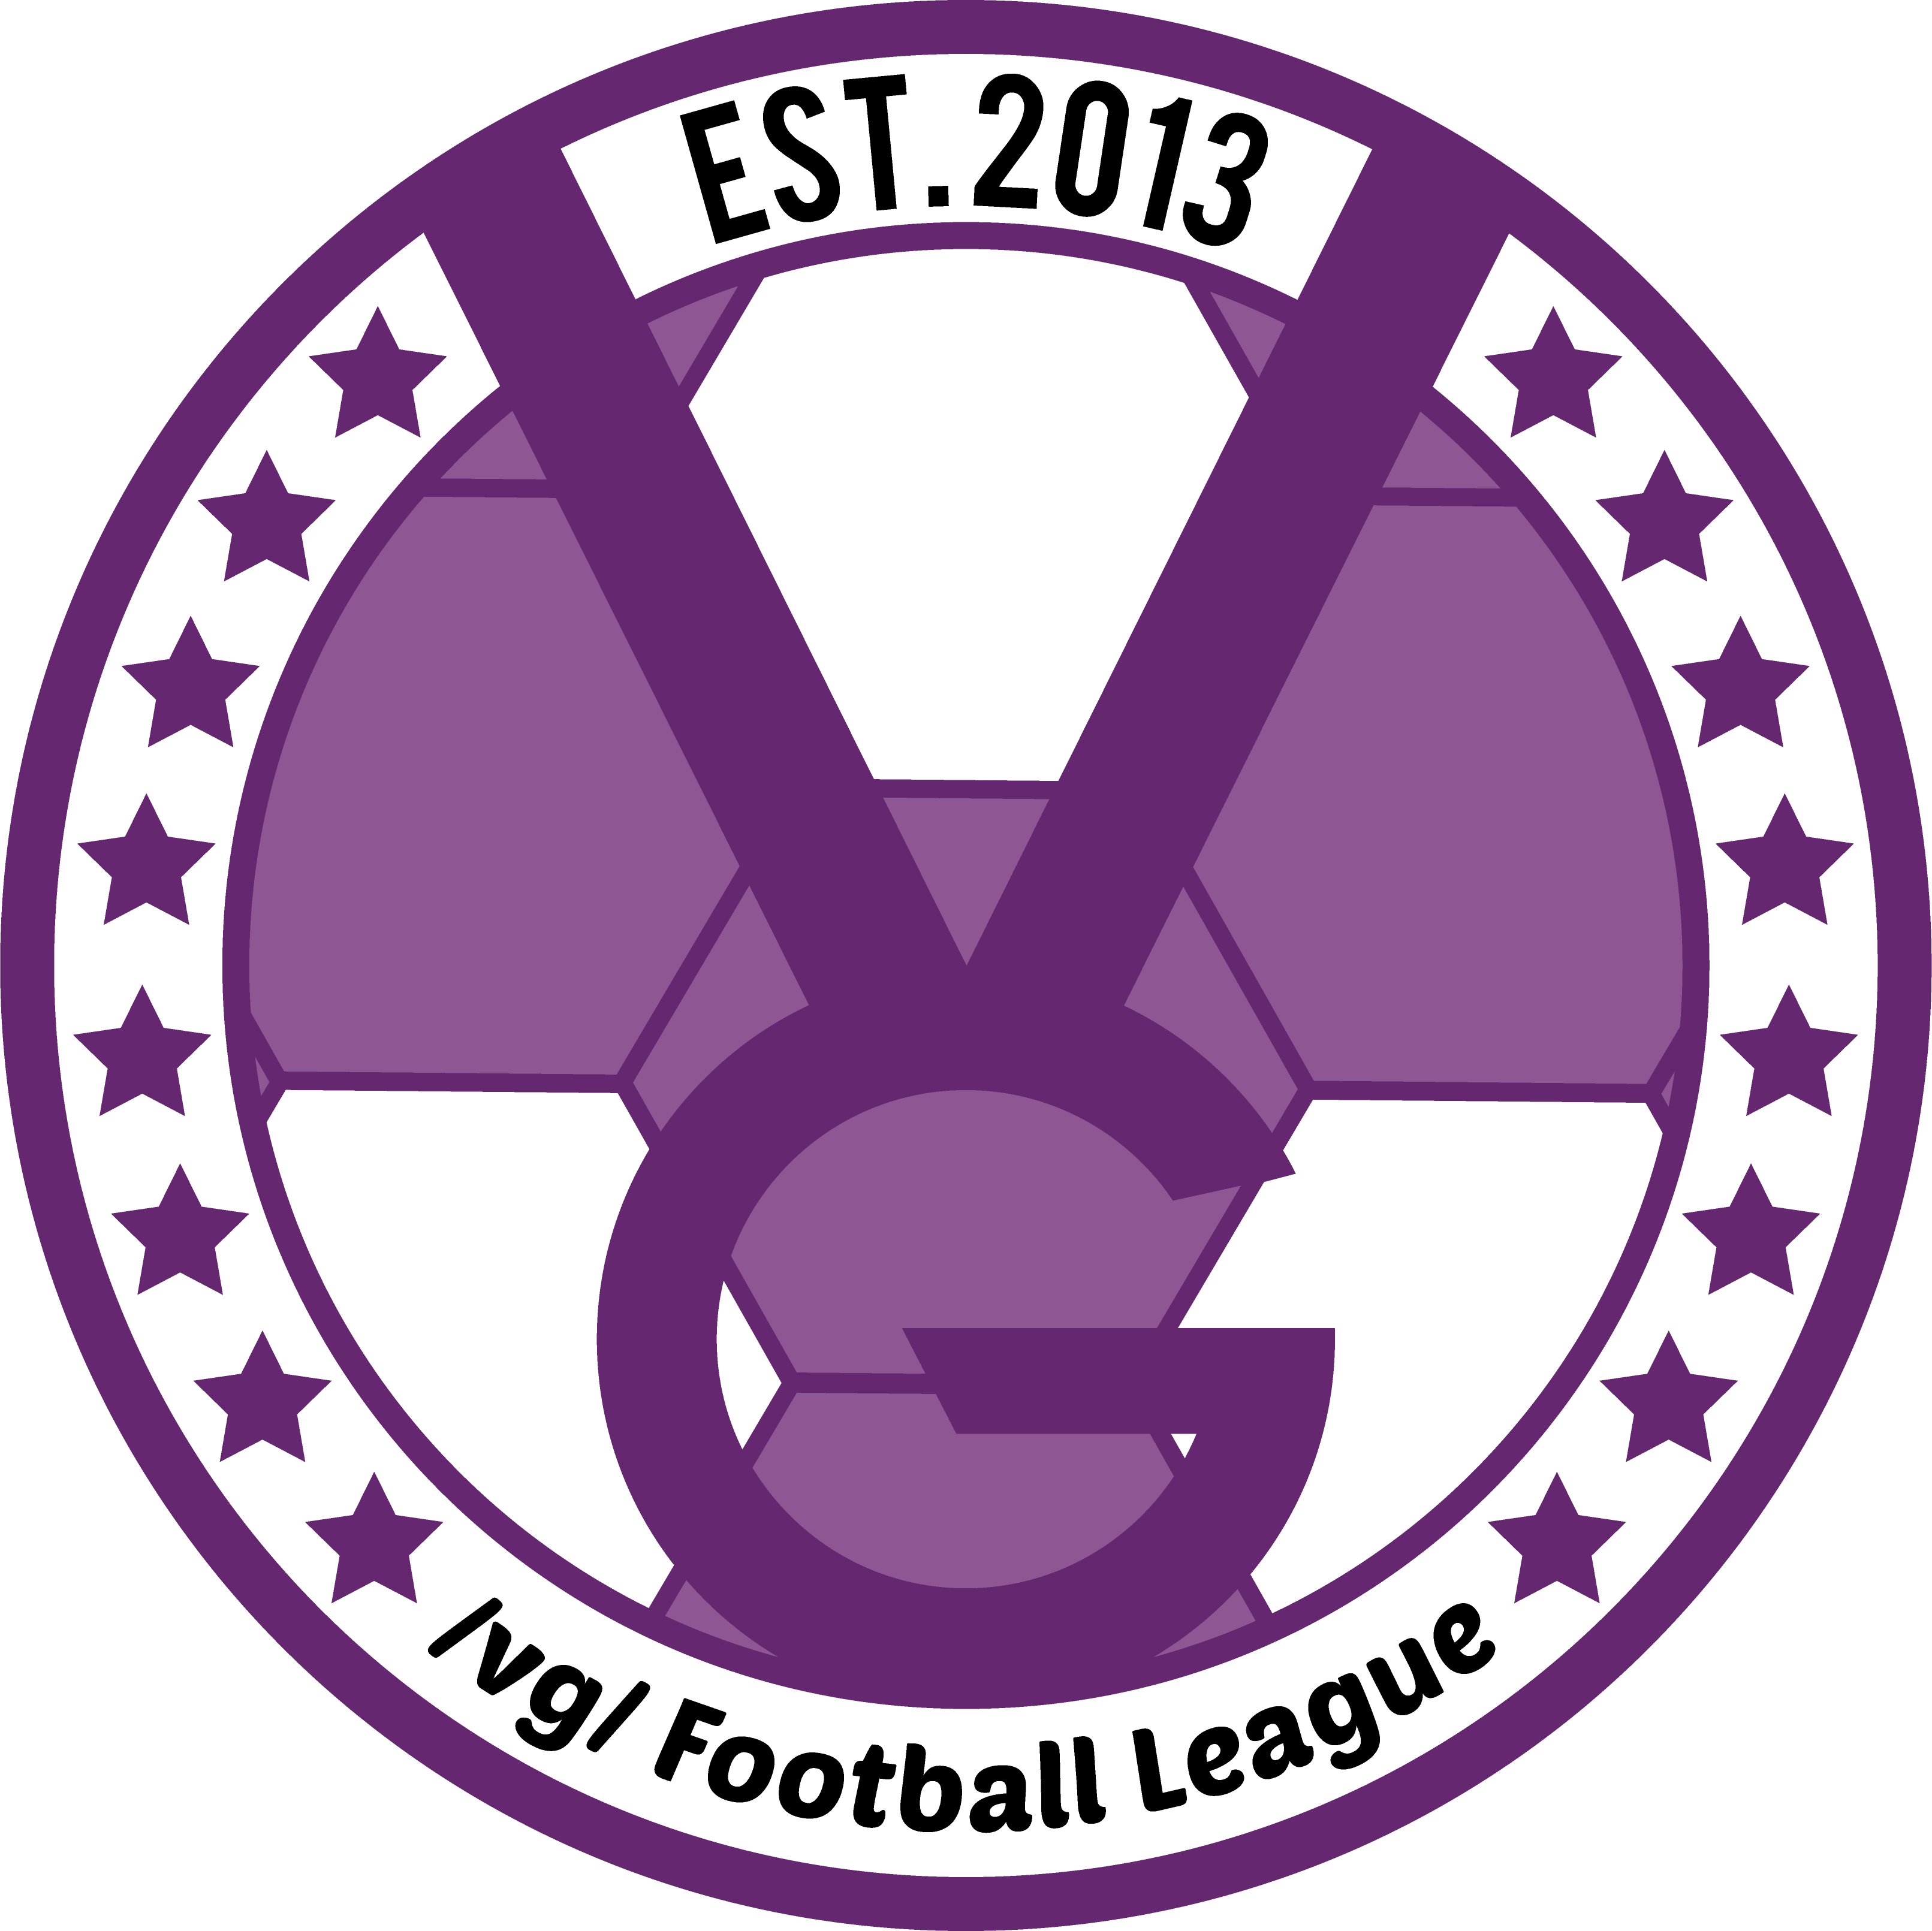 /vg/ League 12